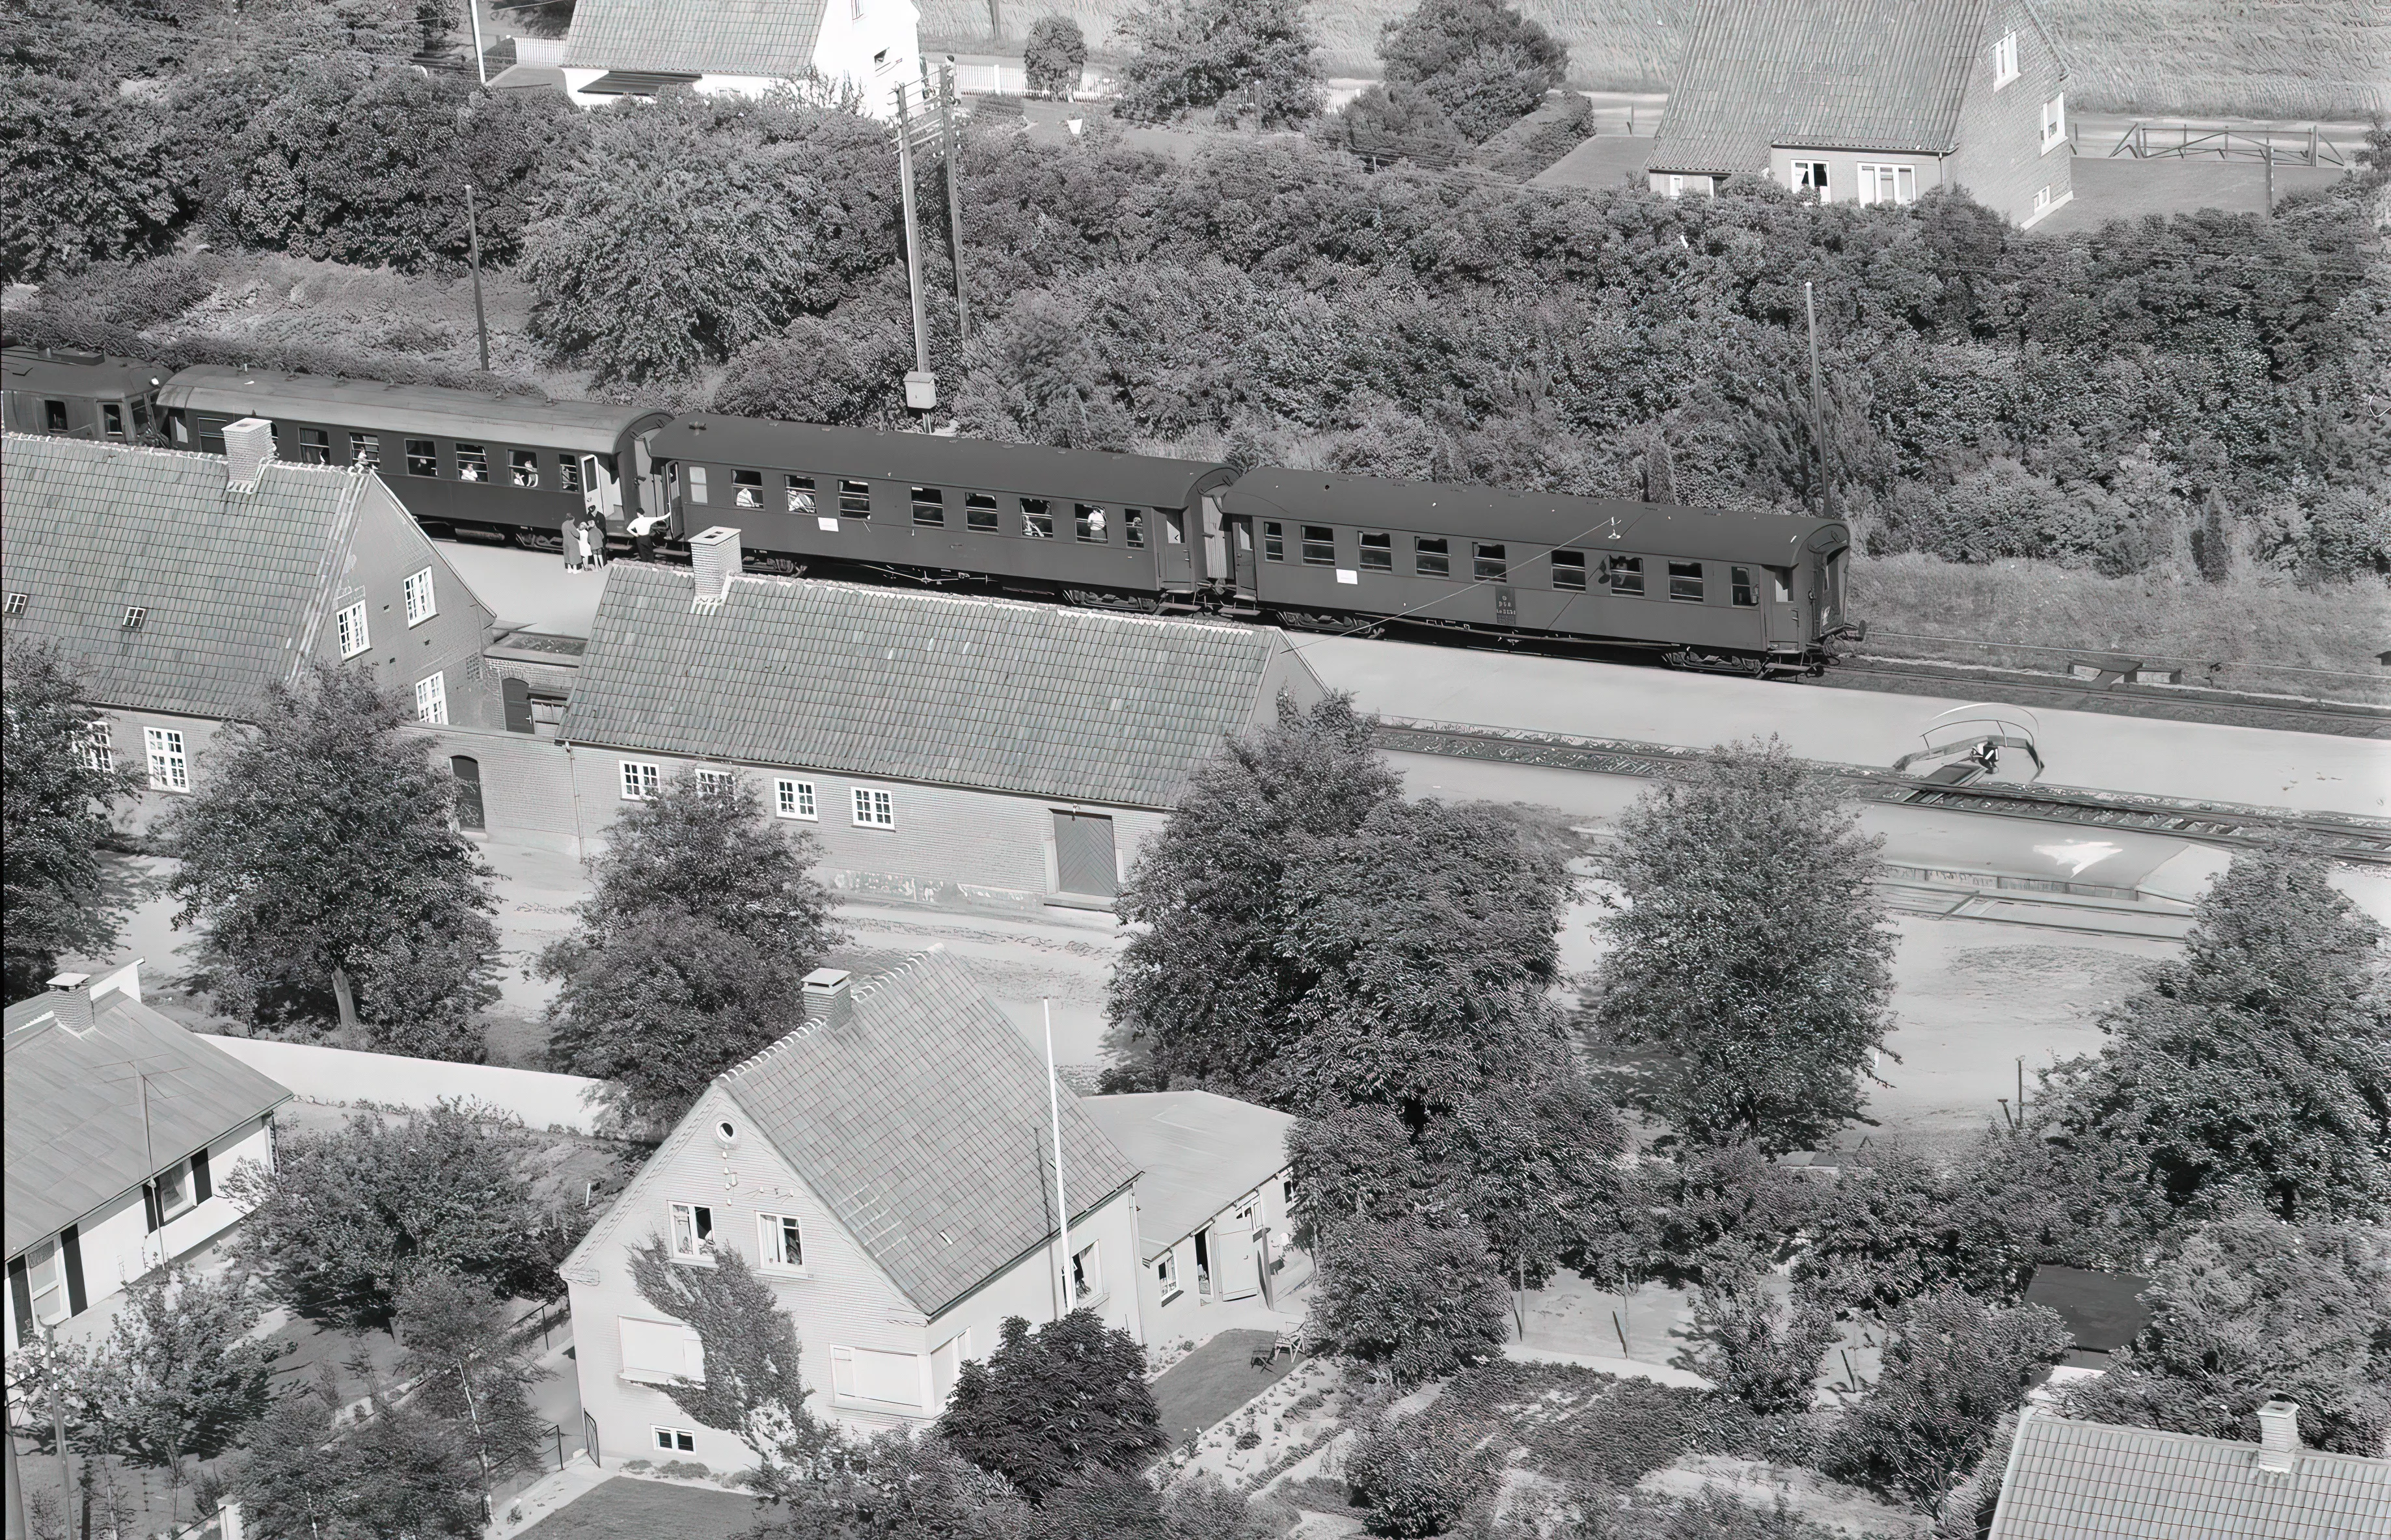 Billede af tog ud for Bråby Station, som blev nedsat til trinbræt i 1960.